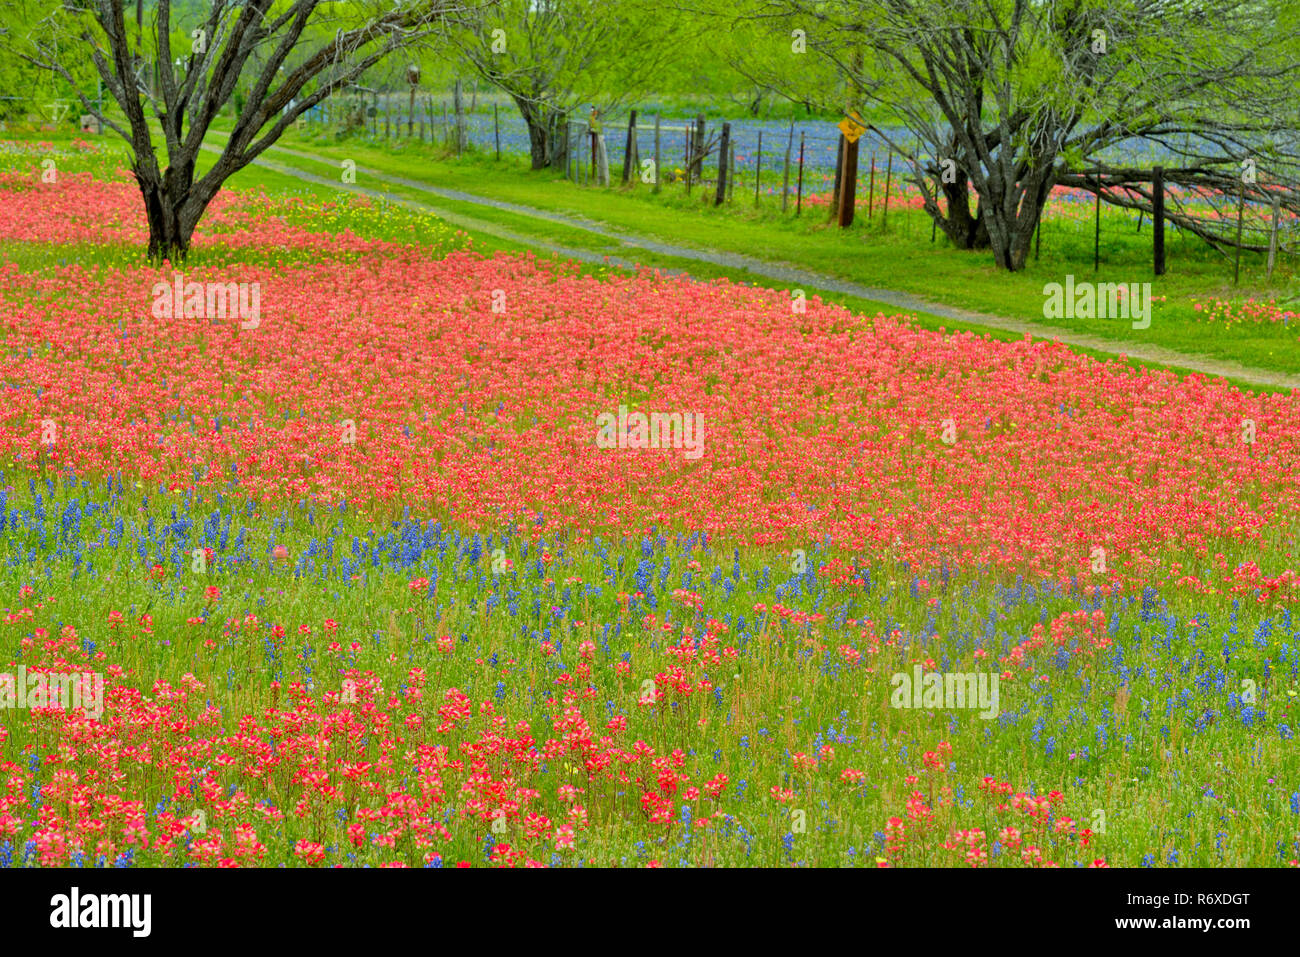 Texas Wildblumen in voller Blüte-Pinsel und Feder Bäume, Somerset, Texas, USA Stockfoto